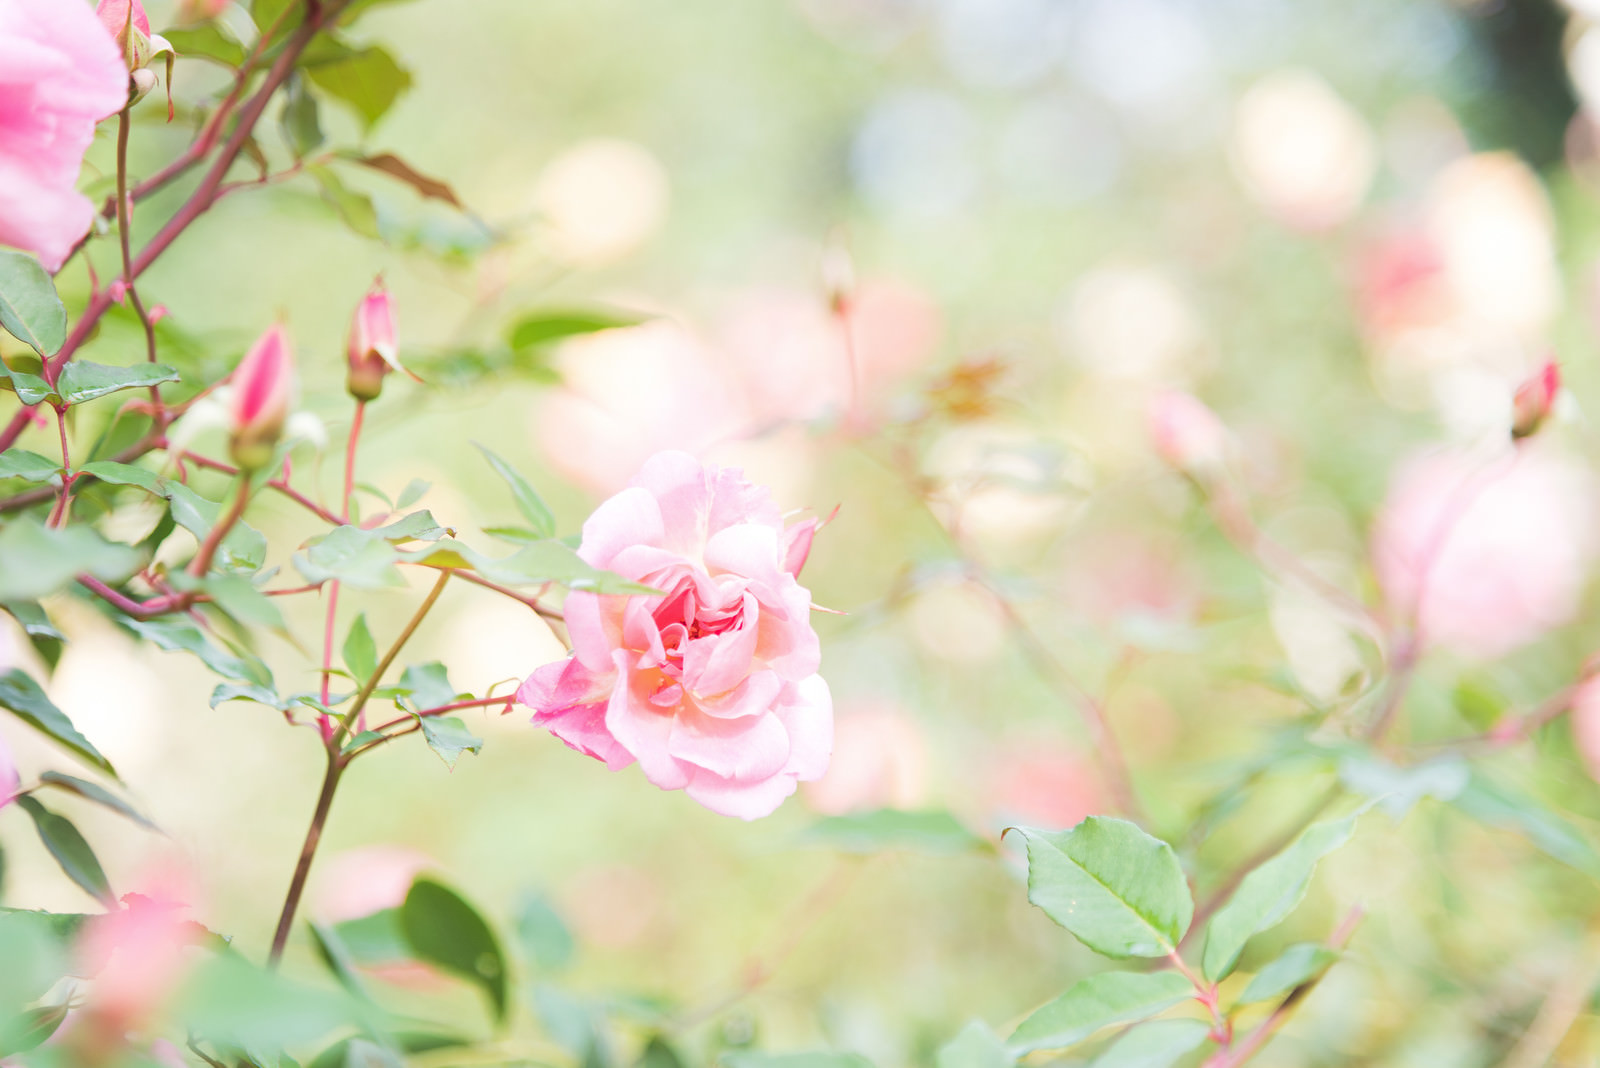 「幻想的に咲く桃色のバラ」の写真